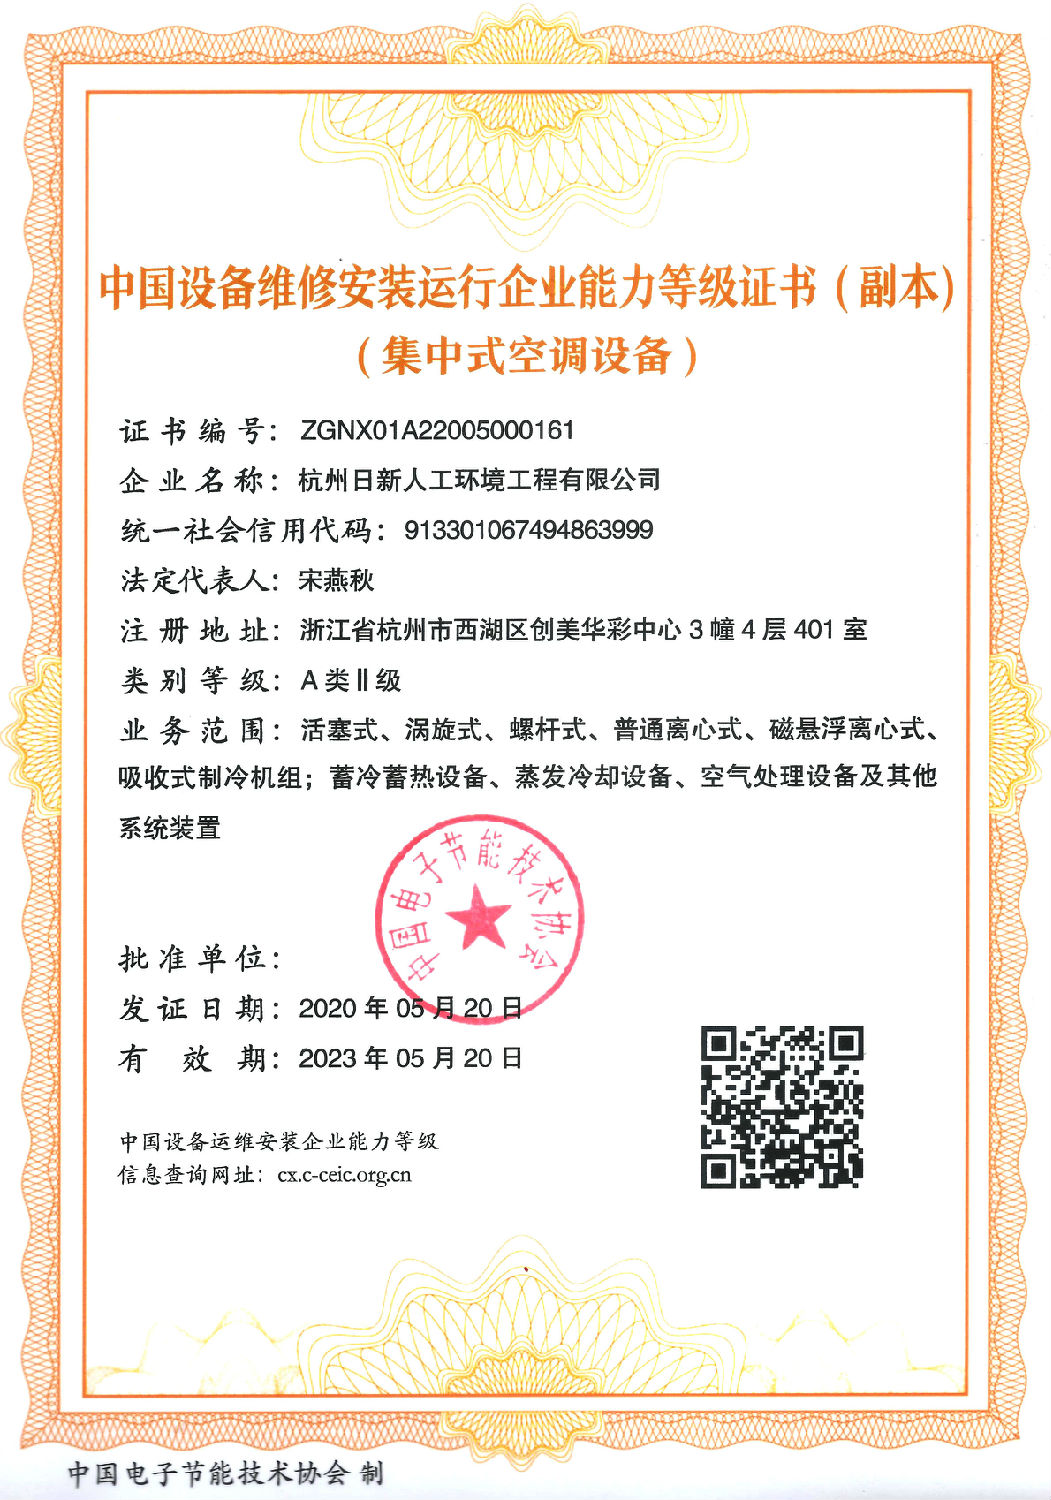 集中式空调设备 中国设备维修安装运行企业能力登记证书